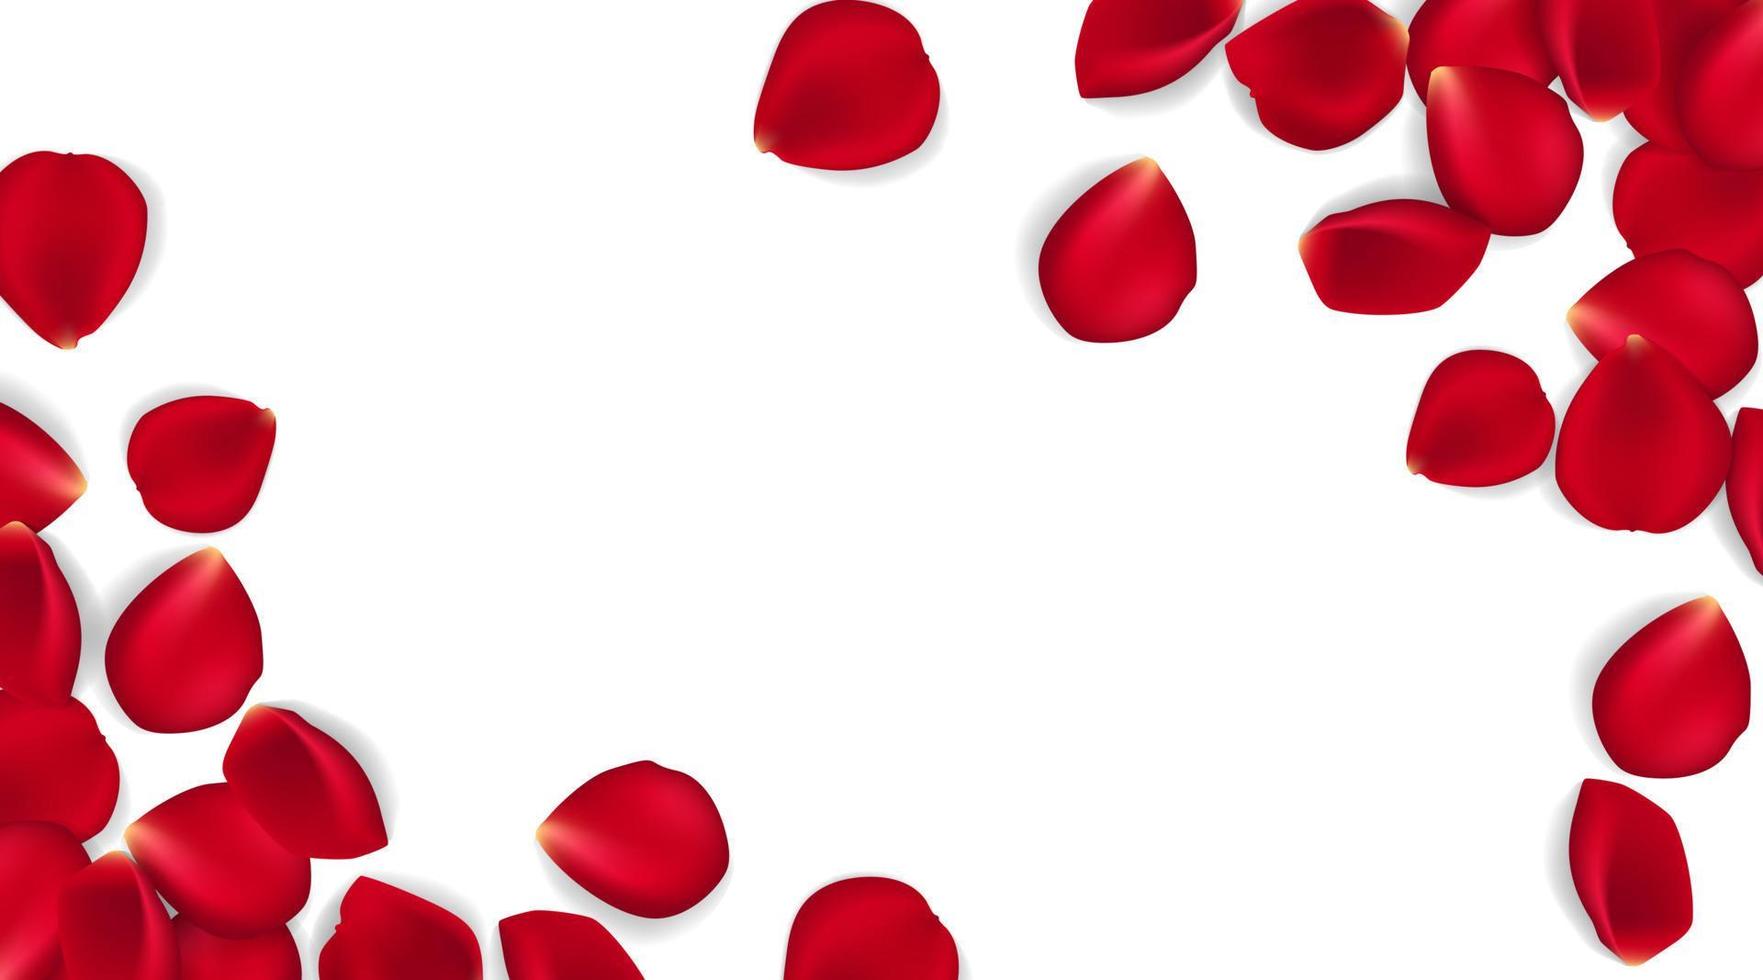 Rosenblätter auf weißem Grund. Vektor-illustration Hintergrund der roten Rosenblätter. kann Valentinstag, Muttertag und verschiedene Feiertage verwendet werden. vektor